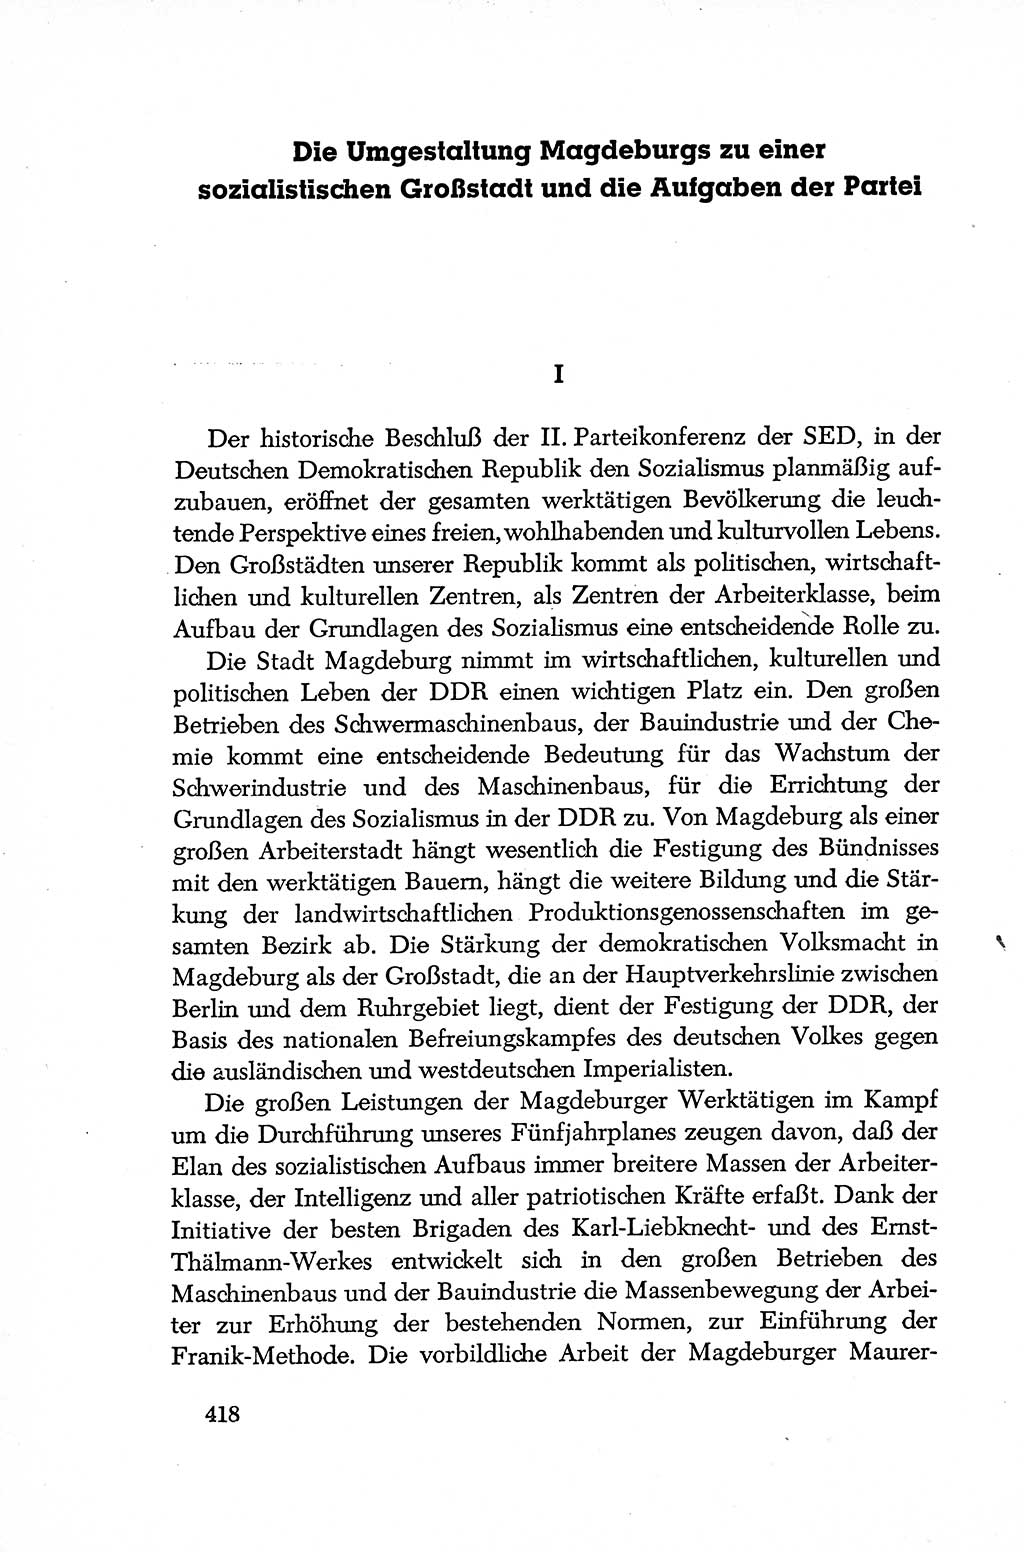 Dokumente der Sozialistischen Einheitspartei Deutschlands (SED) [Deutsche Demokratische Republik (DDR)] 1952-1953, Seite 418 (Dok. SED DDR 1952-1953, S. 418)